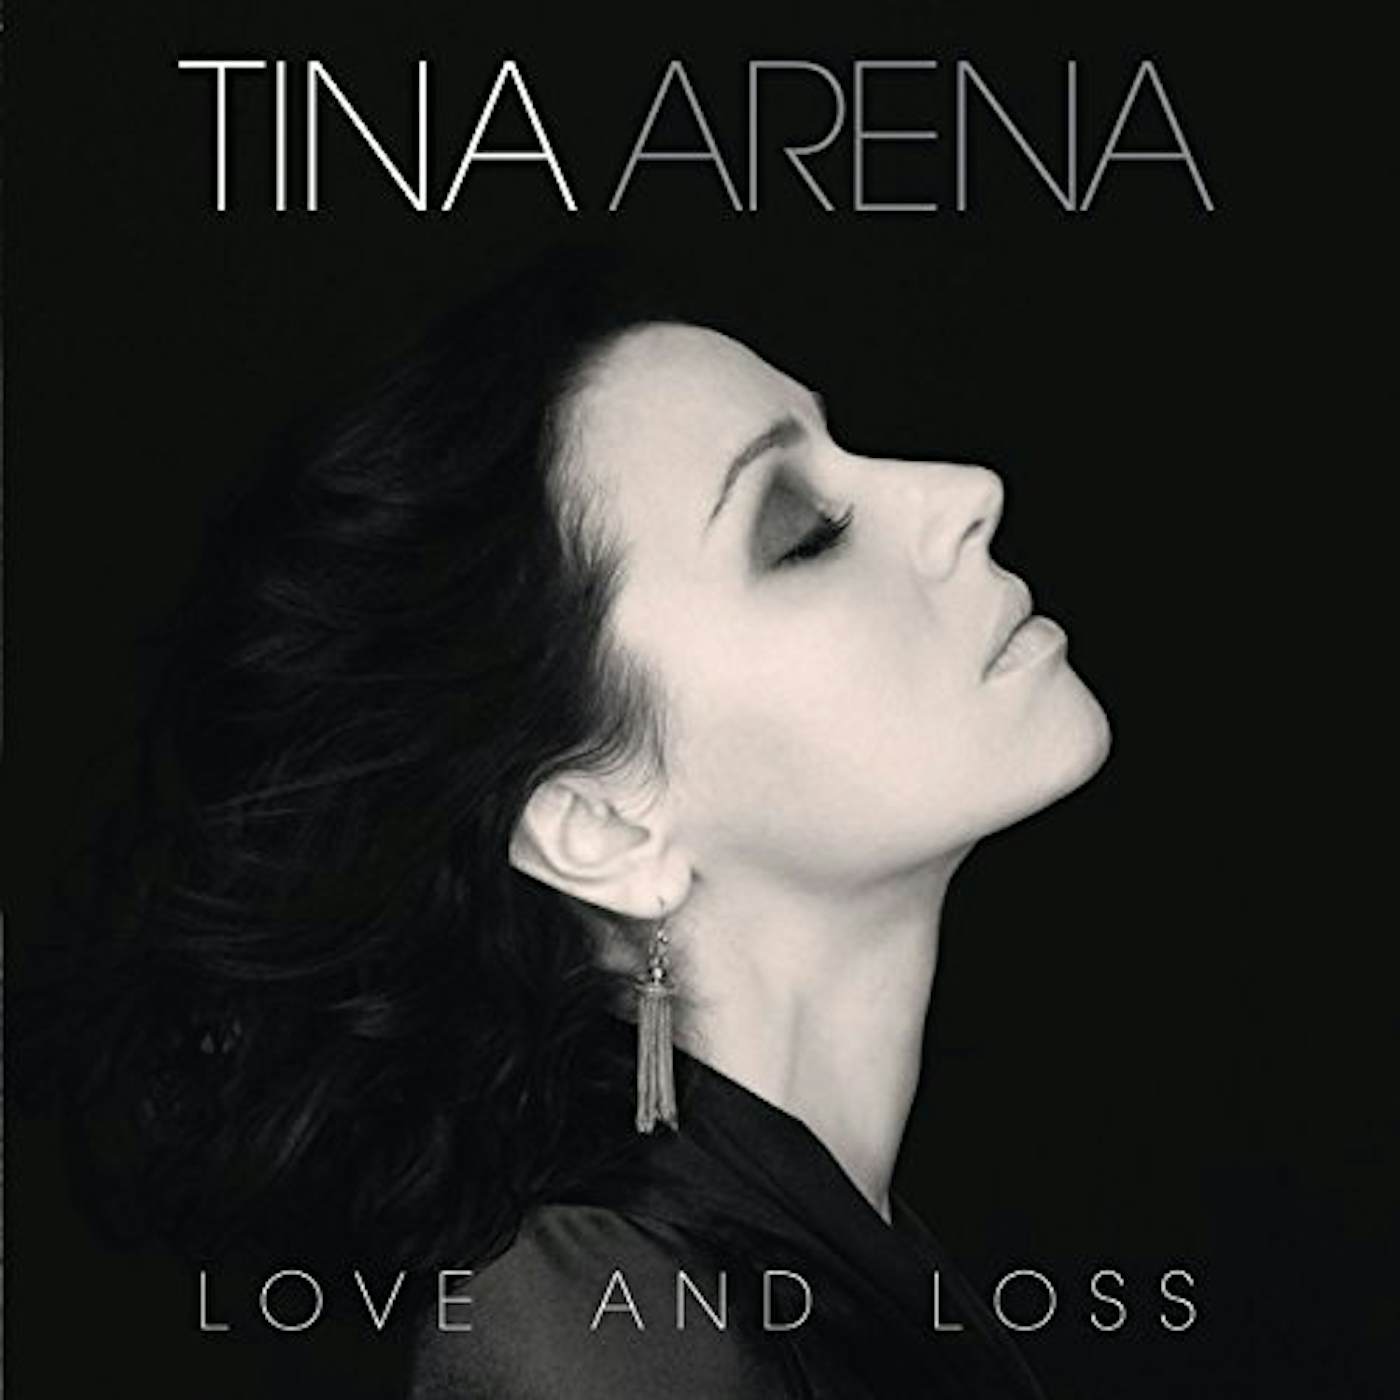 Tina Arena LOVE & LOSS CD